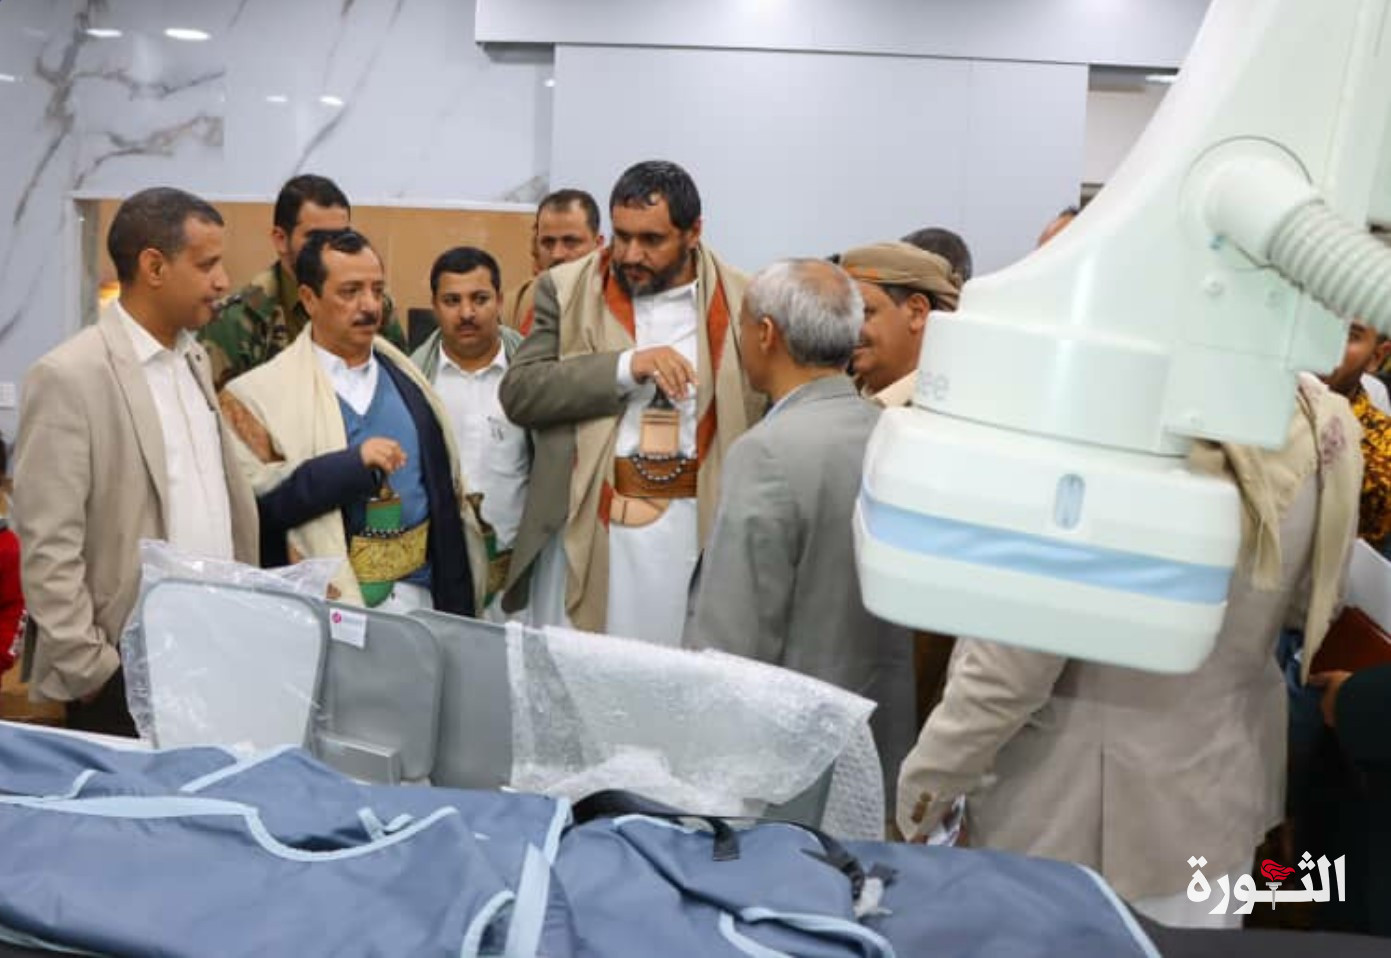 محافظ صنعاء يؤكد تقديم الدعم الكامل وتذليل الصعوبات أمام تطوير القطاع الصحي